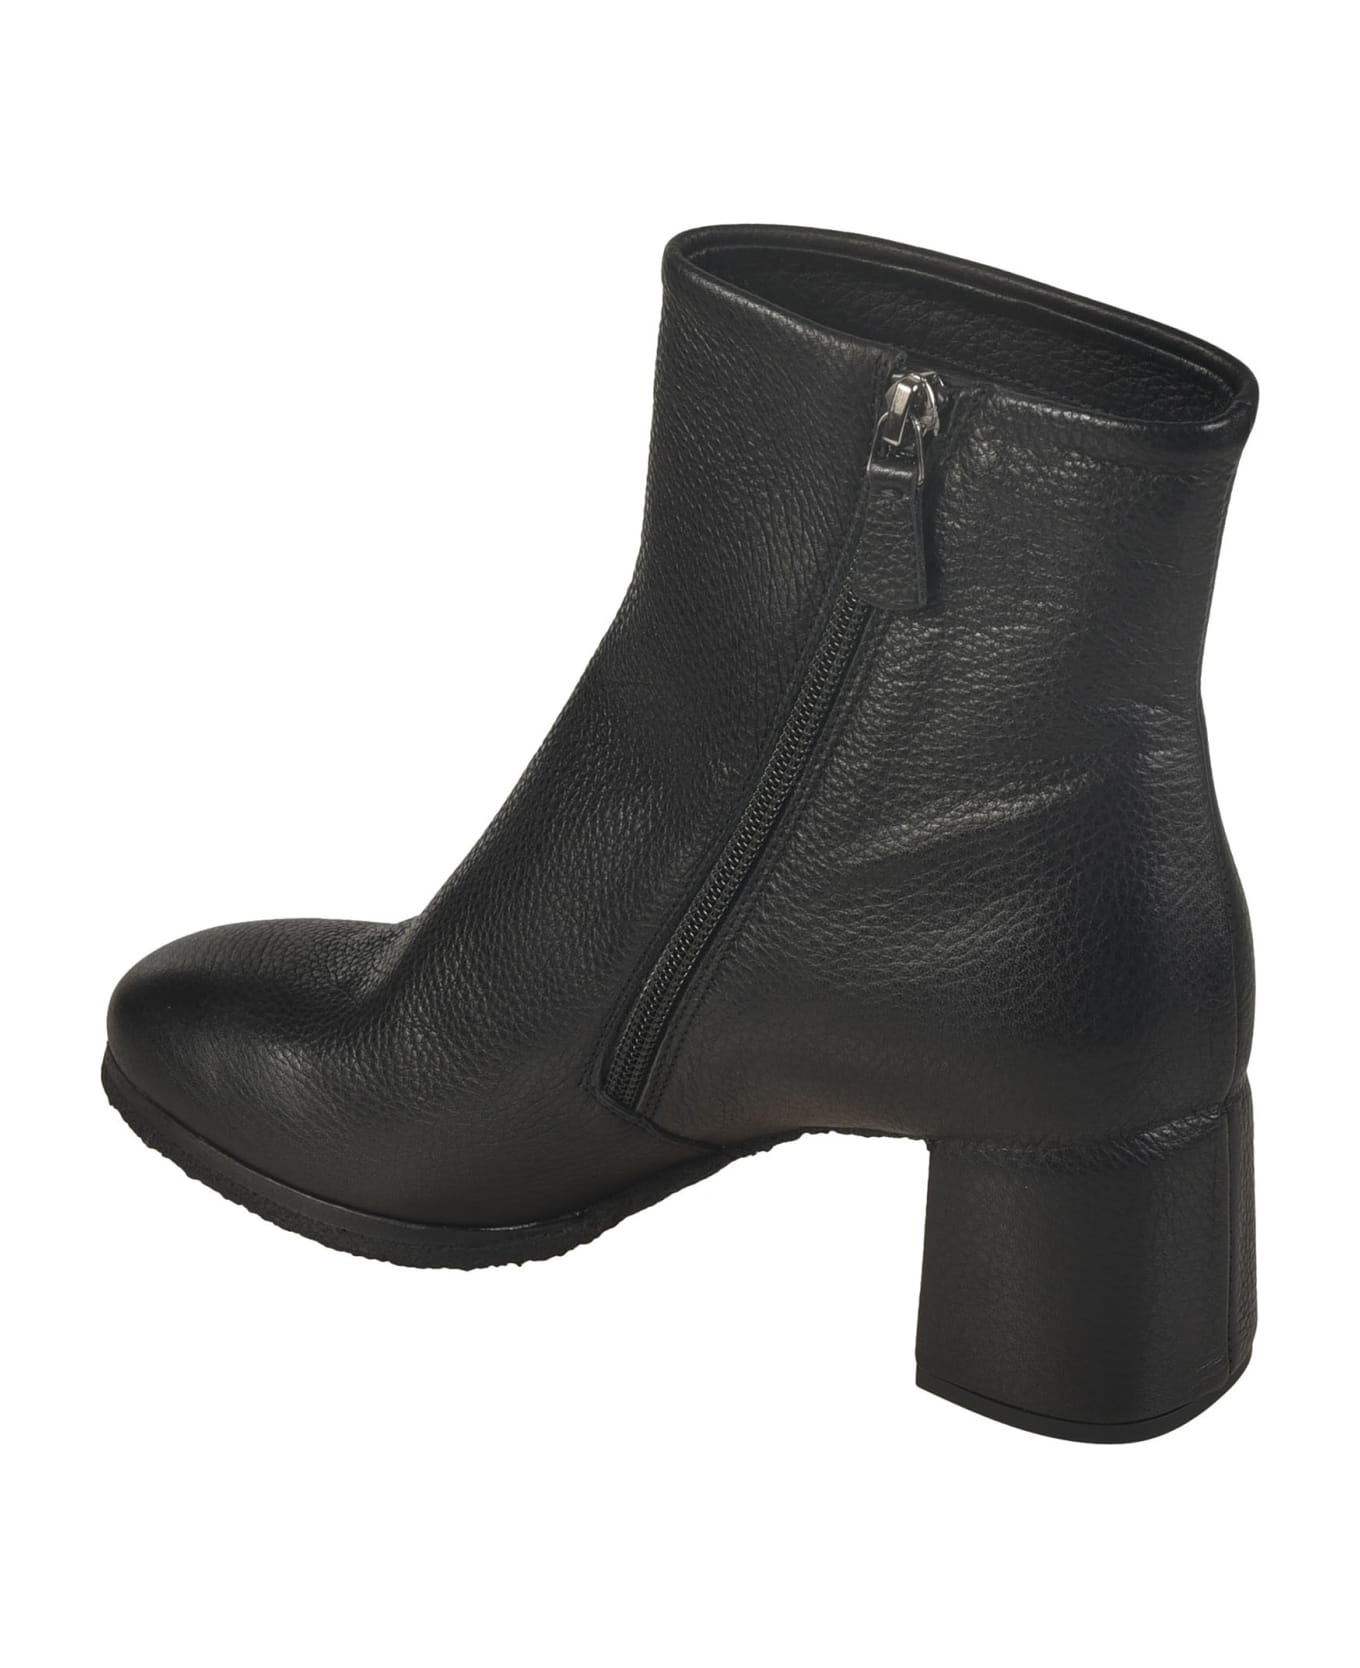 Del Carlo Side Zip Boots - Black ブーツ